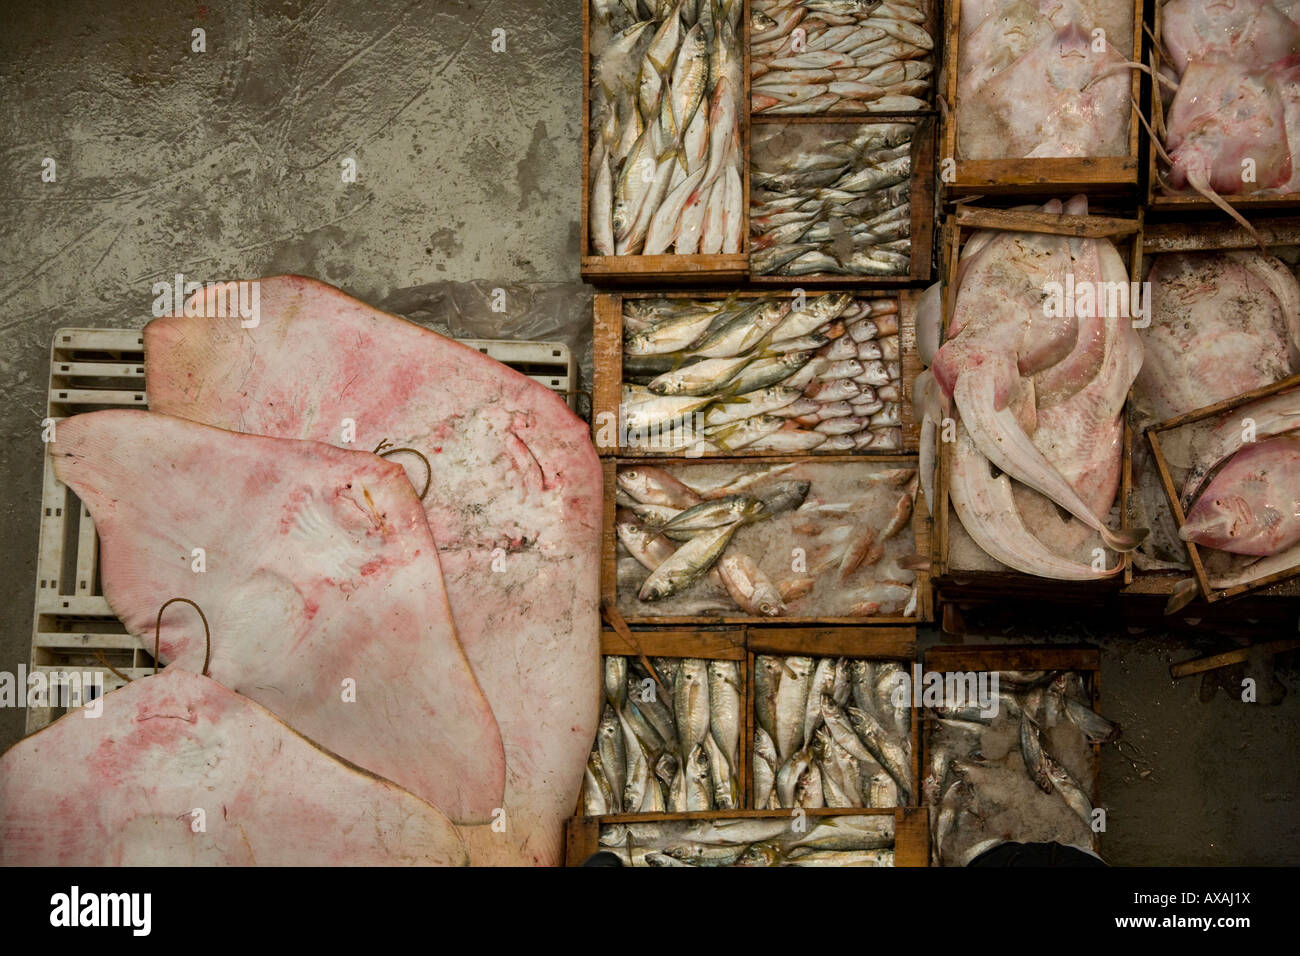 Casse scatole piene di fresco pesce bagnato, nel mercato del pesce Agadir, Marocco, Manta ray. Raie. Poisson frais. Foto Stock